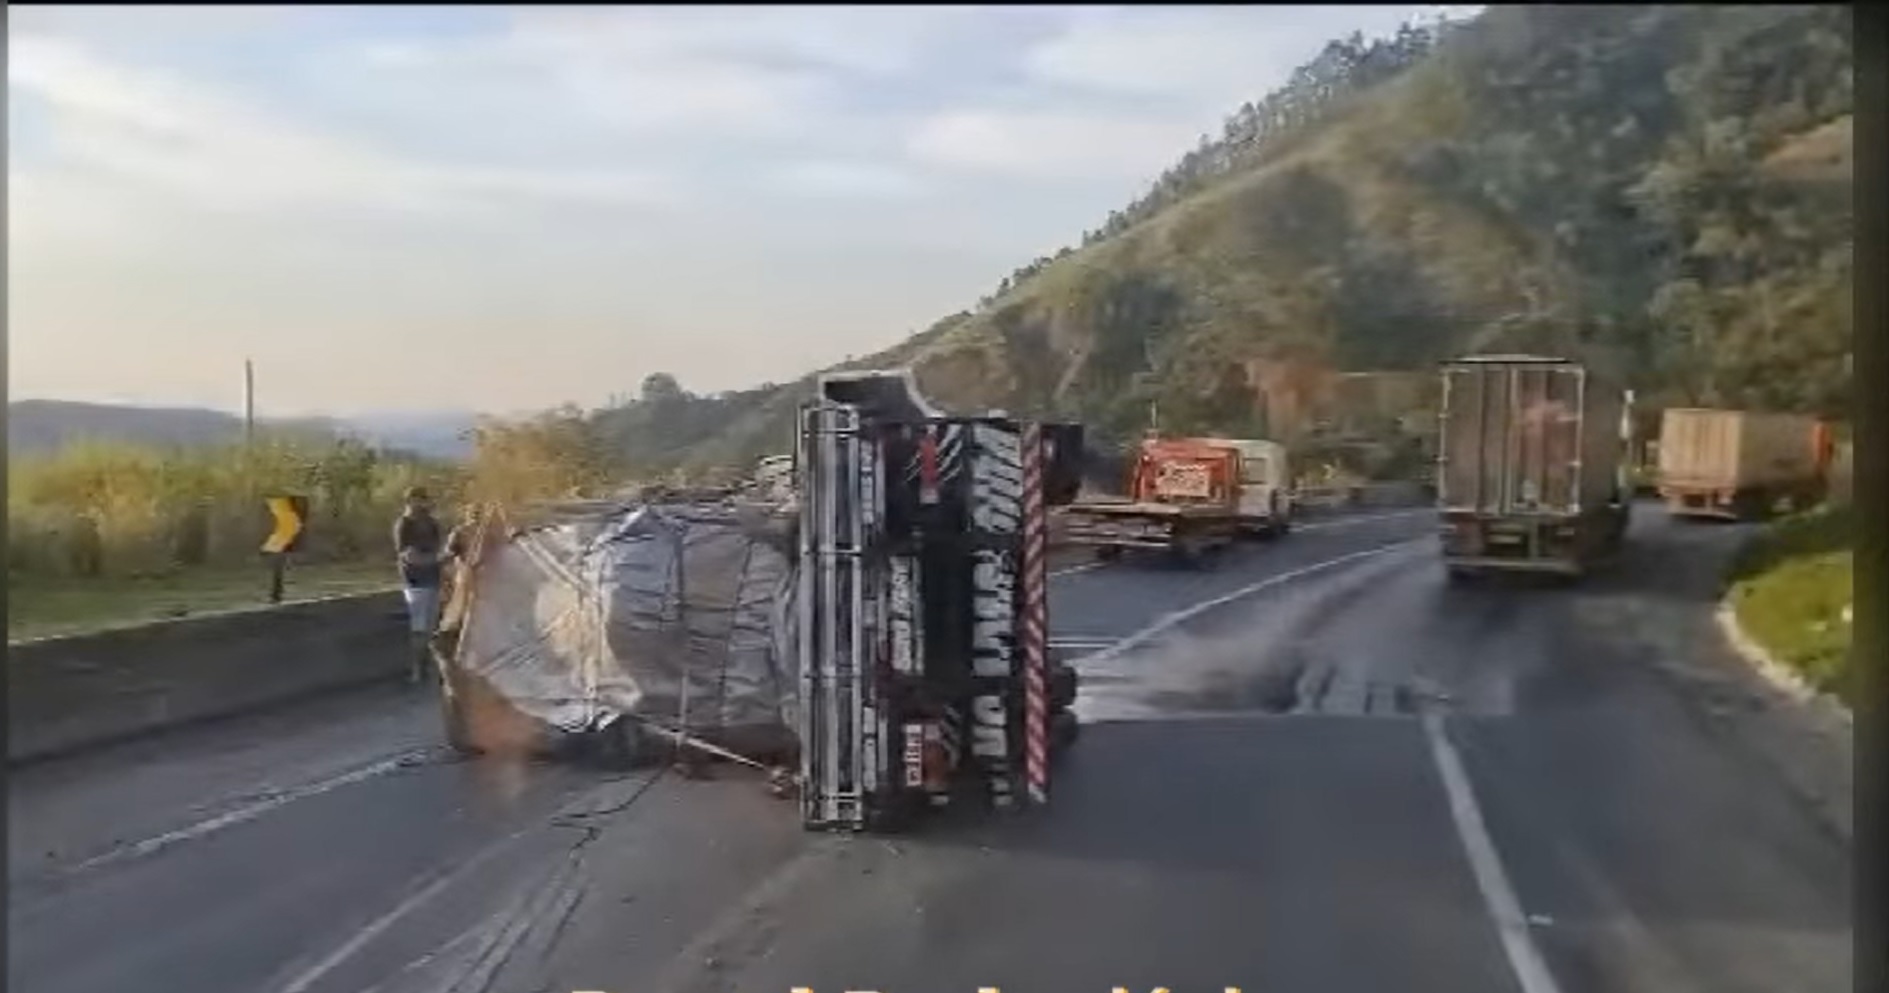 Acidentes provocam engarrafamento na rodovia Fernão Dias